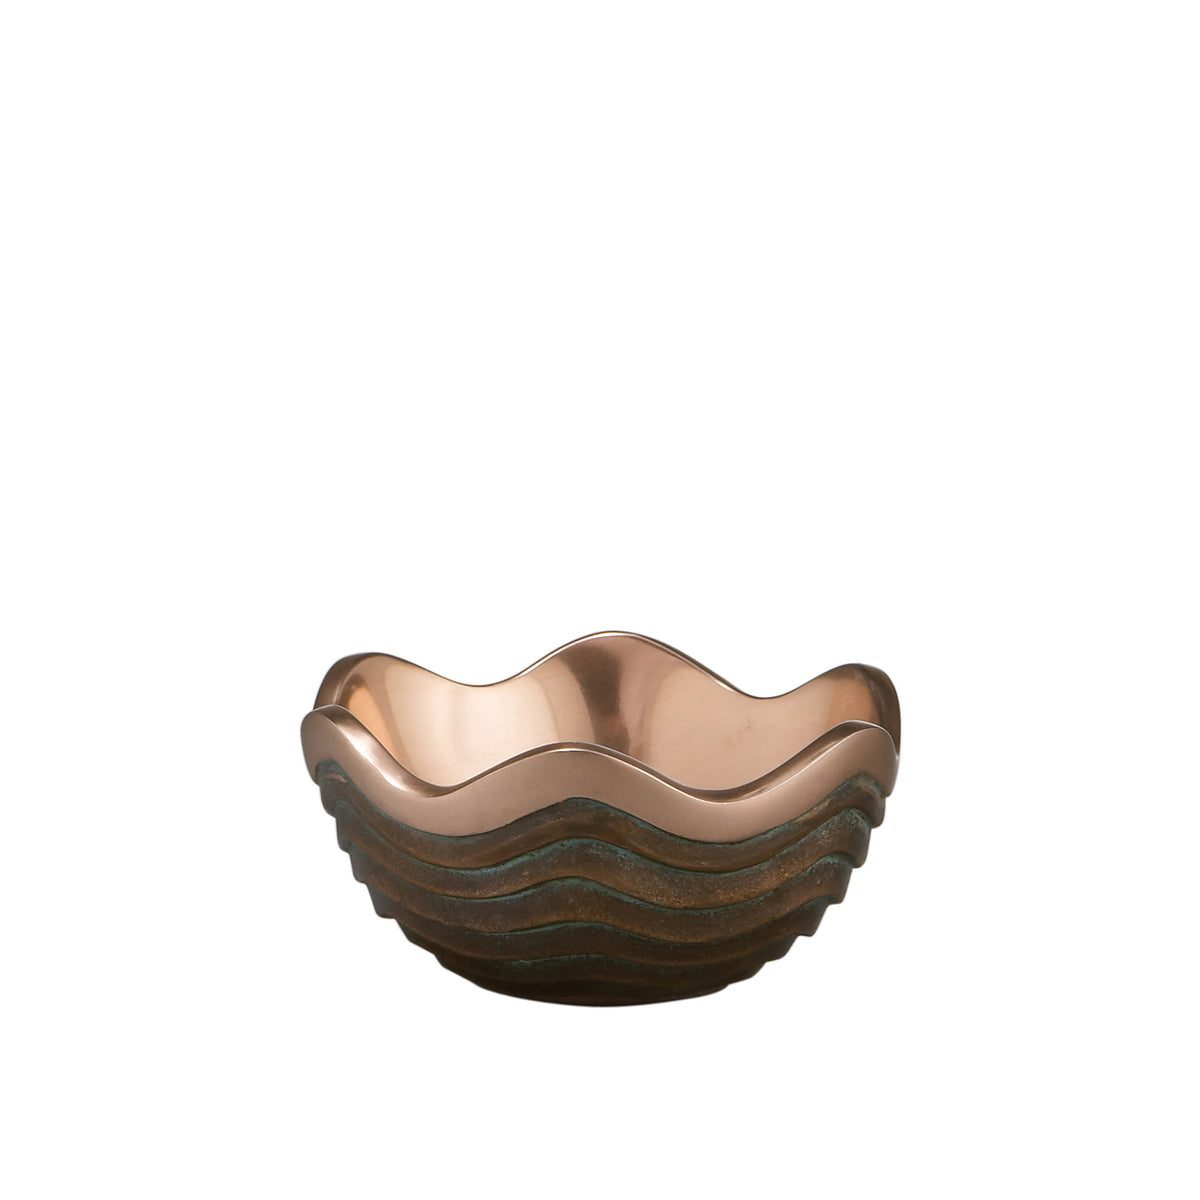 4.5" Copper Canyon Bowl